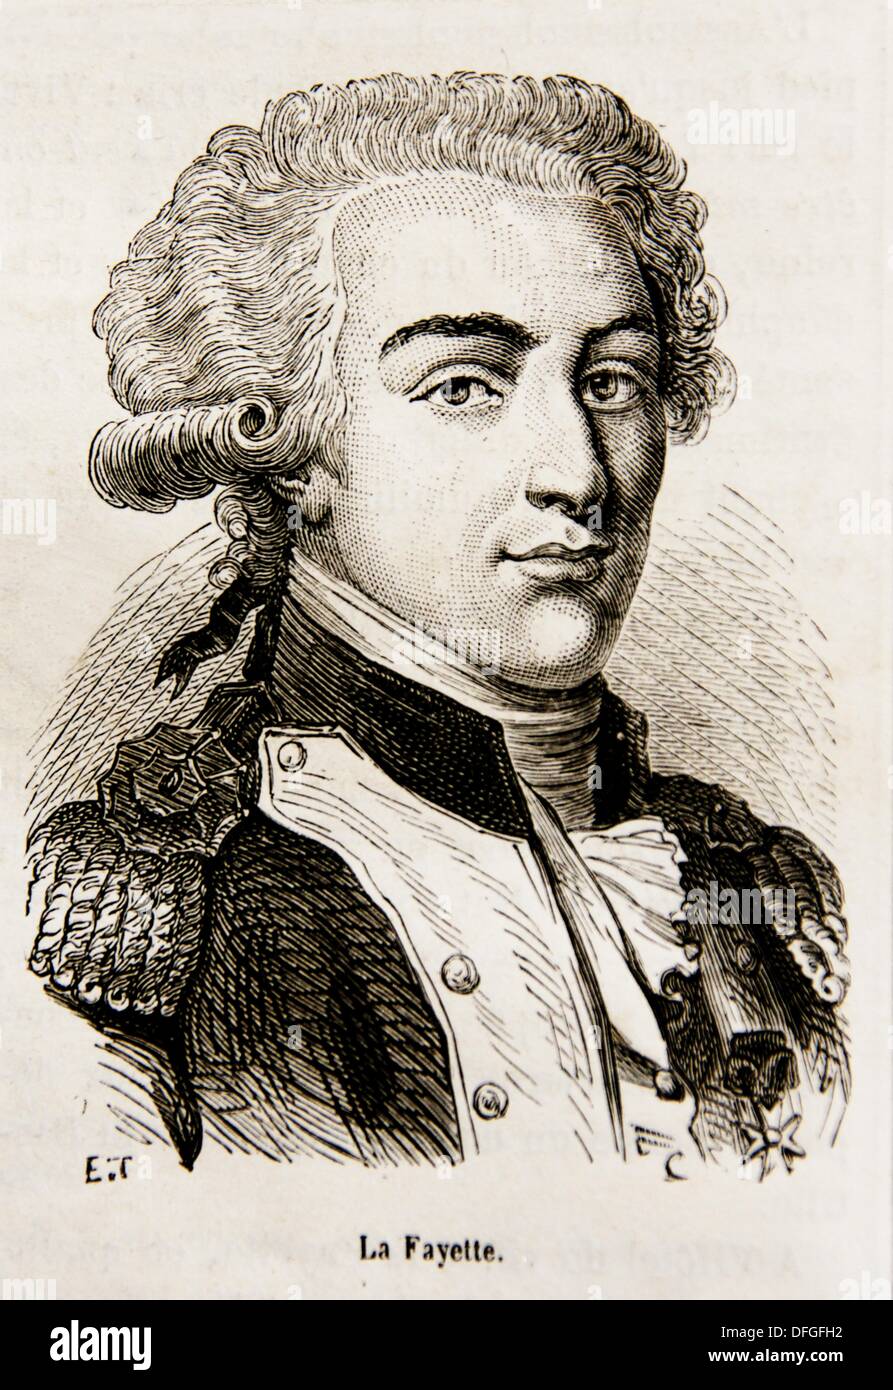 Marie-<b>Joseph Paul</b> Yves Roch Gilbert du Motier, Marquis de La Fayette , 6 - marie-joseph-paul-yves-roch-gilbert-du-motier-marquis-de-la-fayette-DFGFH2